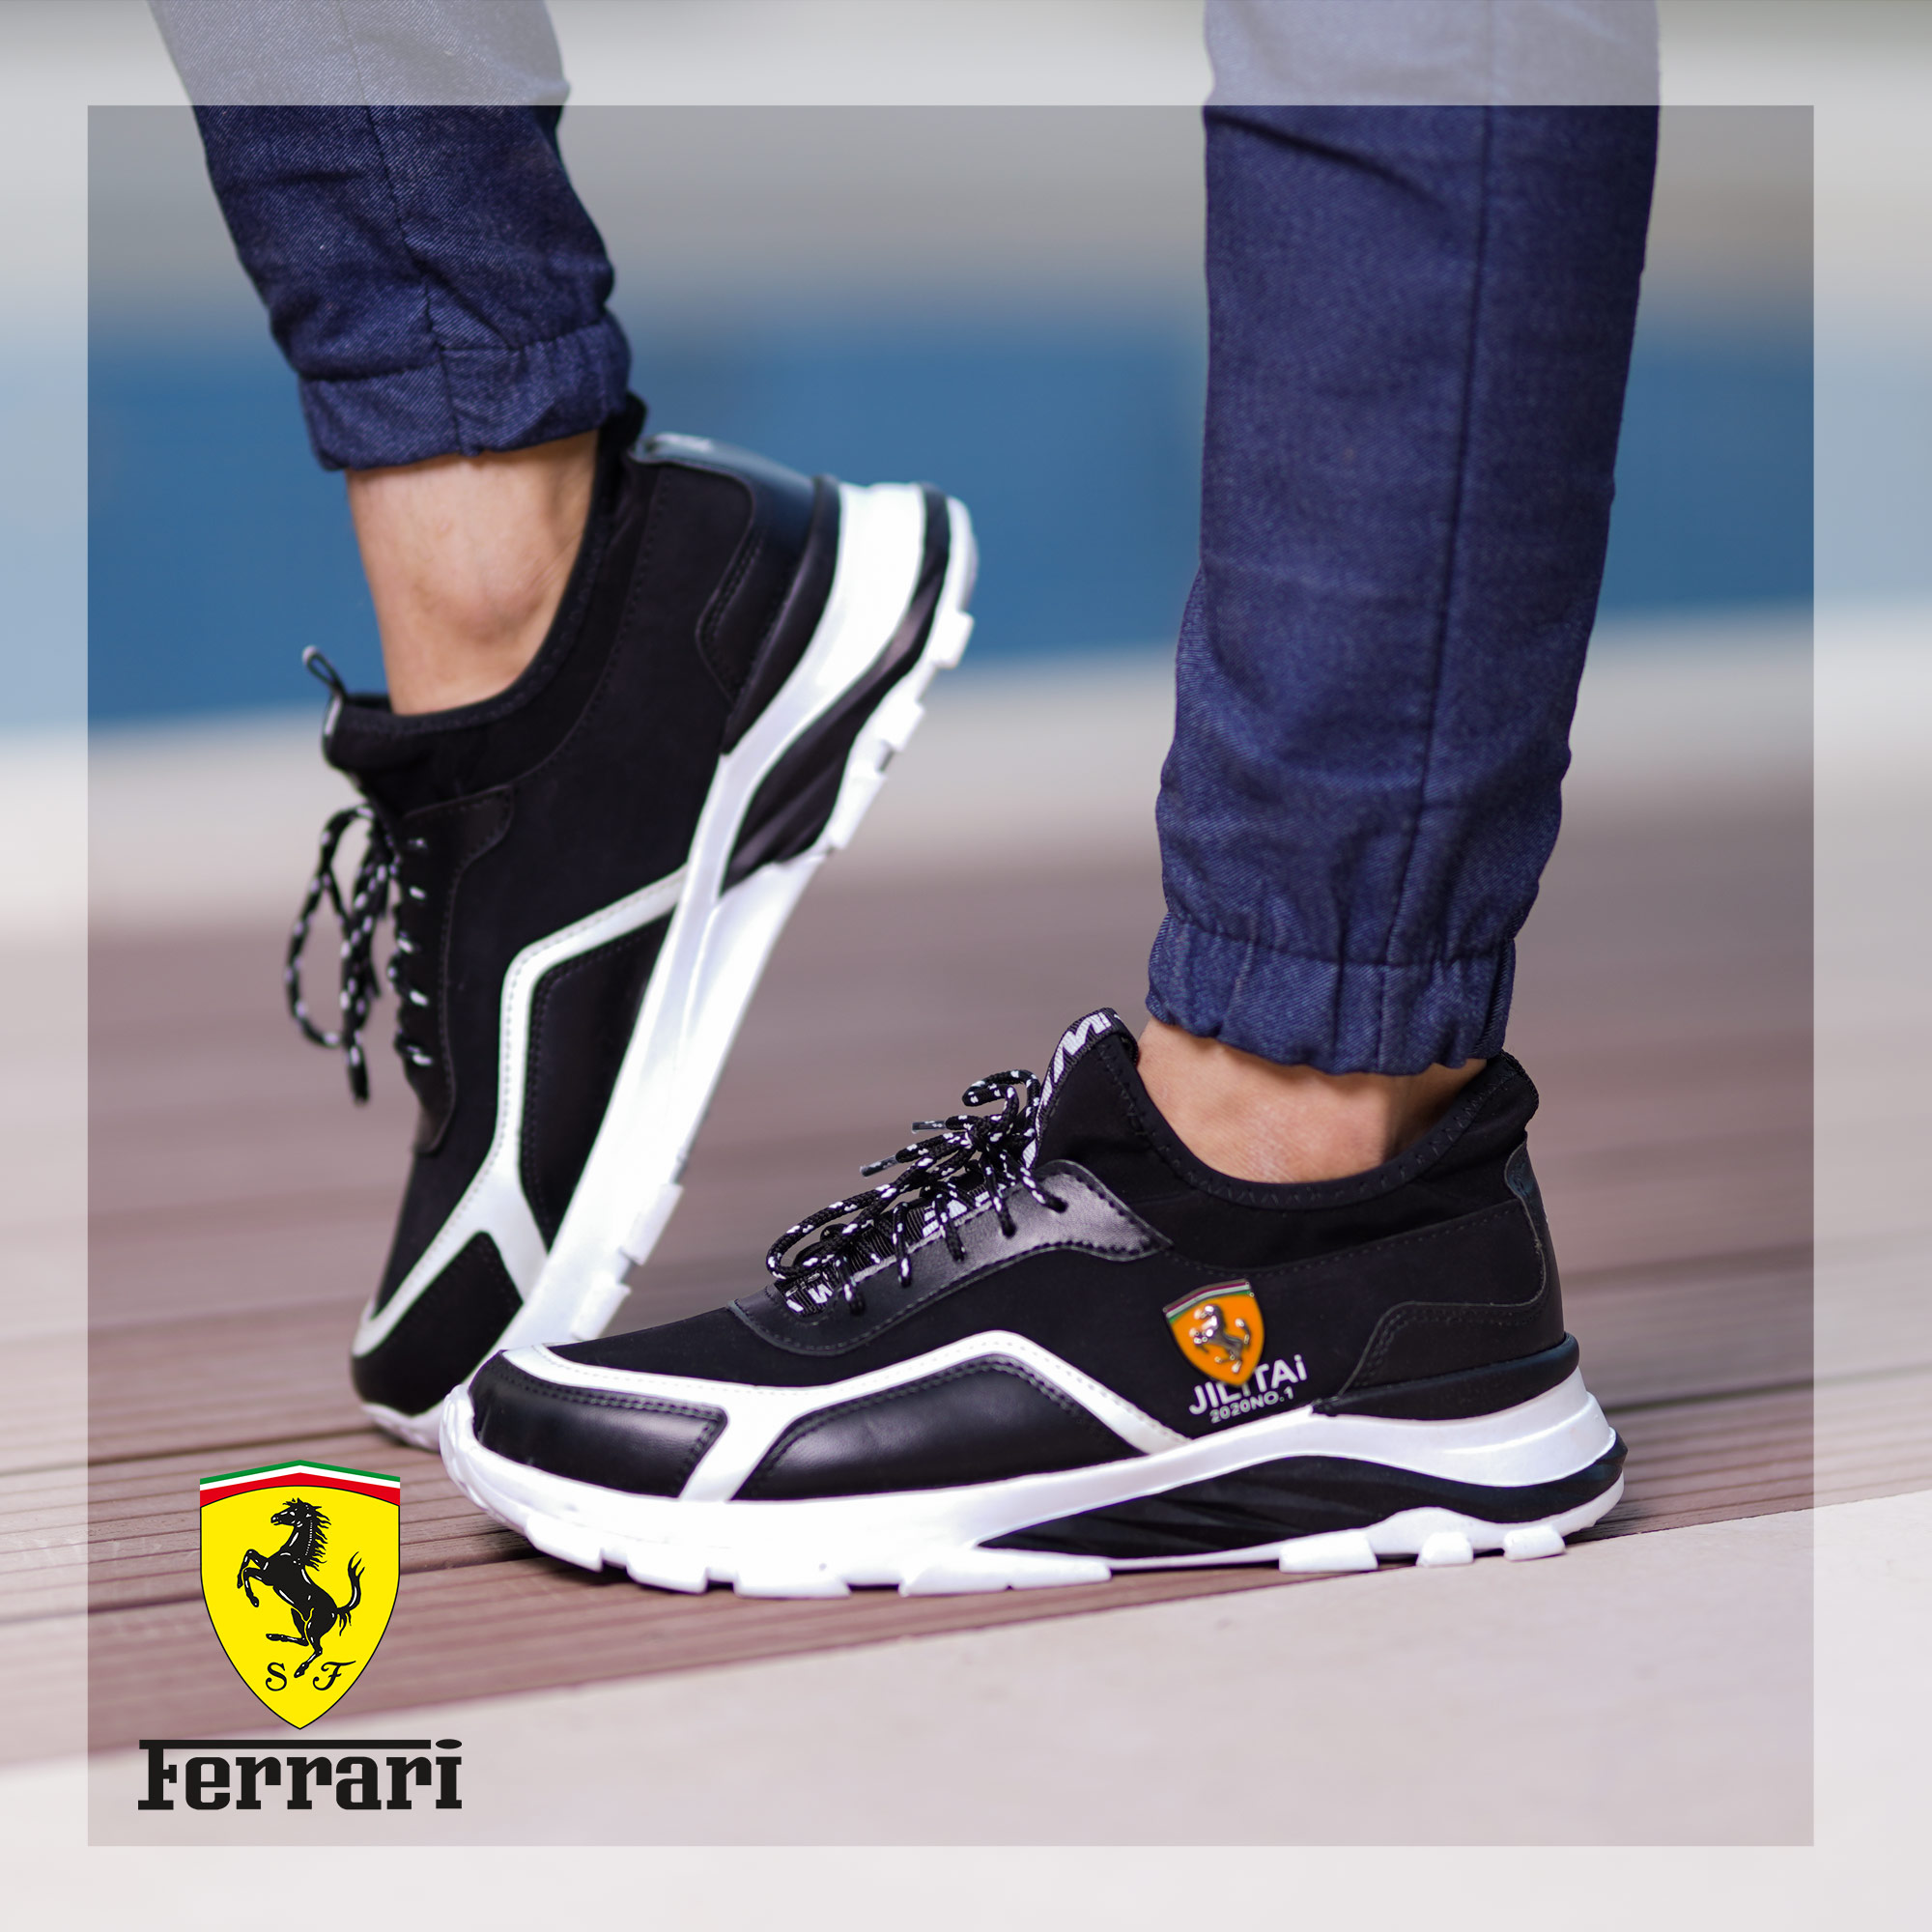 کفش مردانه Ferrari مدل JILITAi(مشکی و سفید)